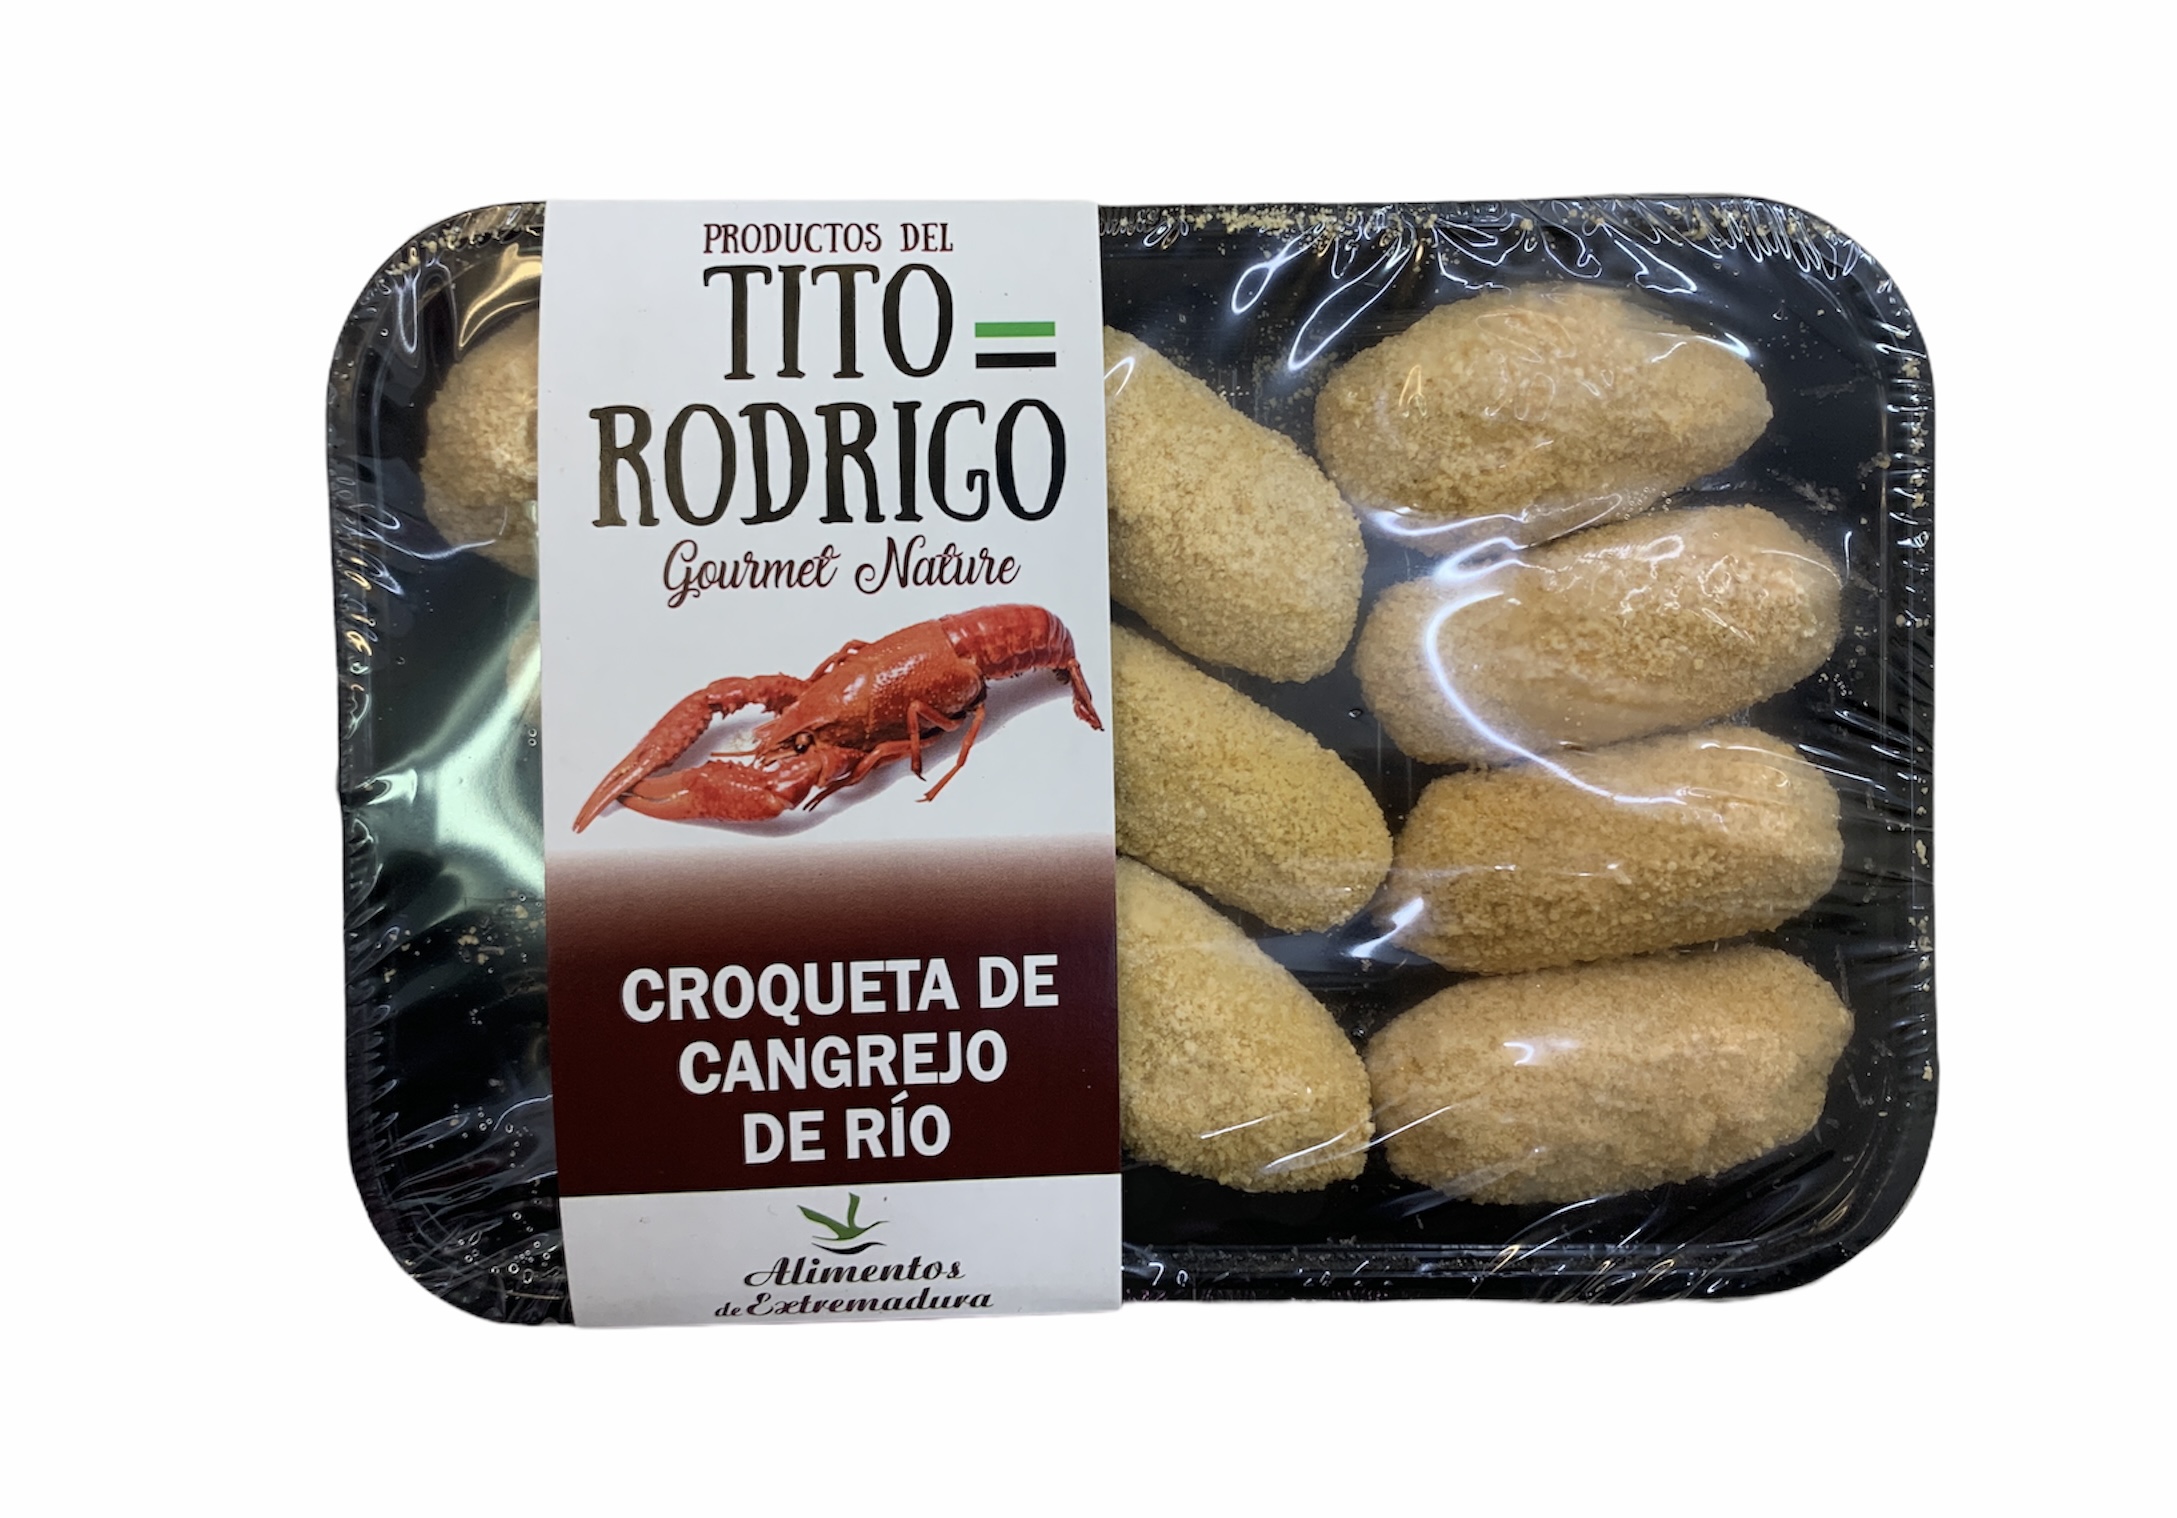 CROQUETA CANGREGO RIO TITO RODRIGO 350g.